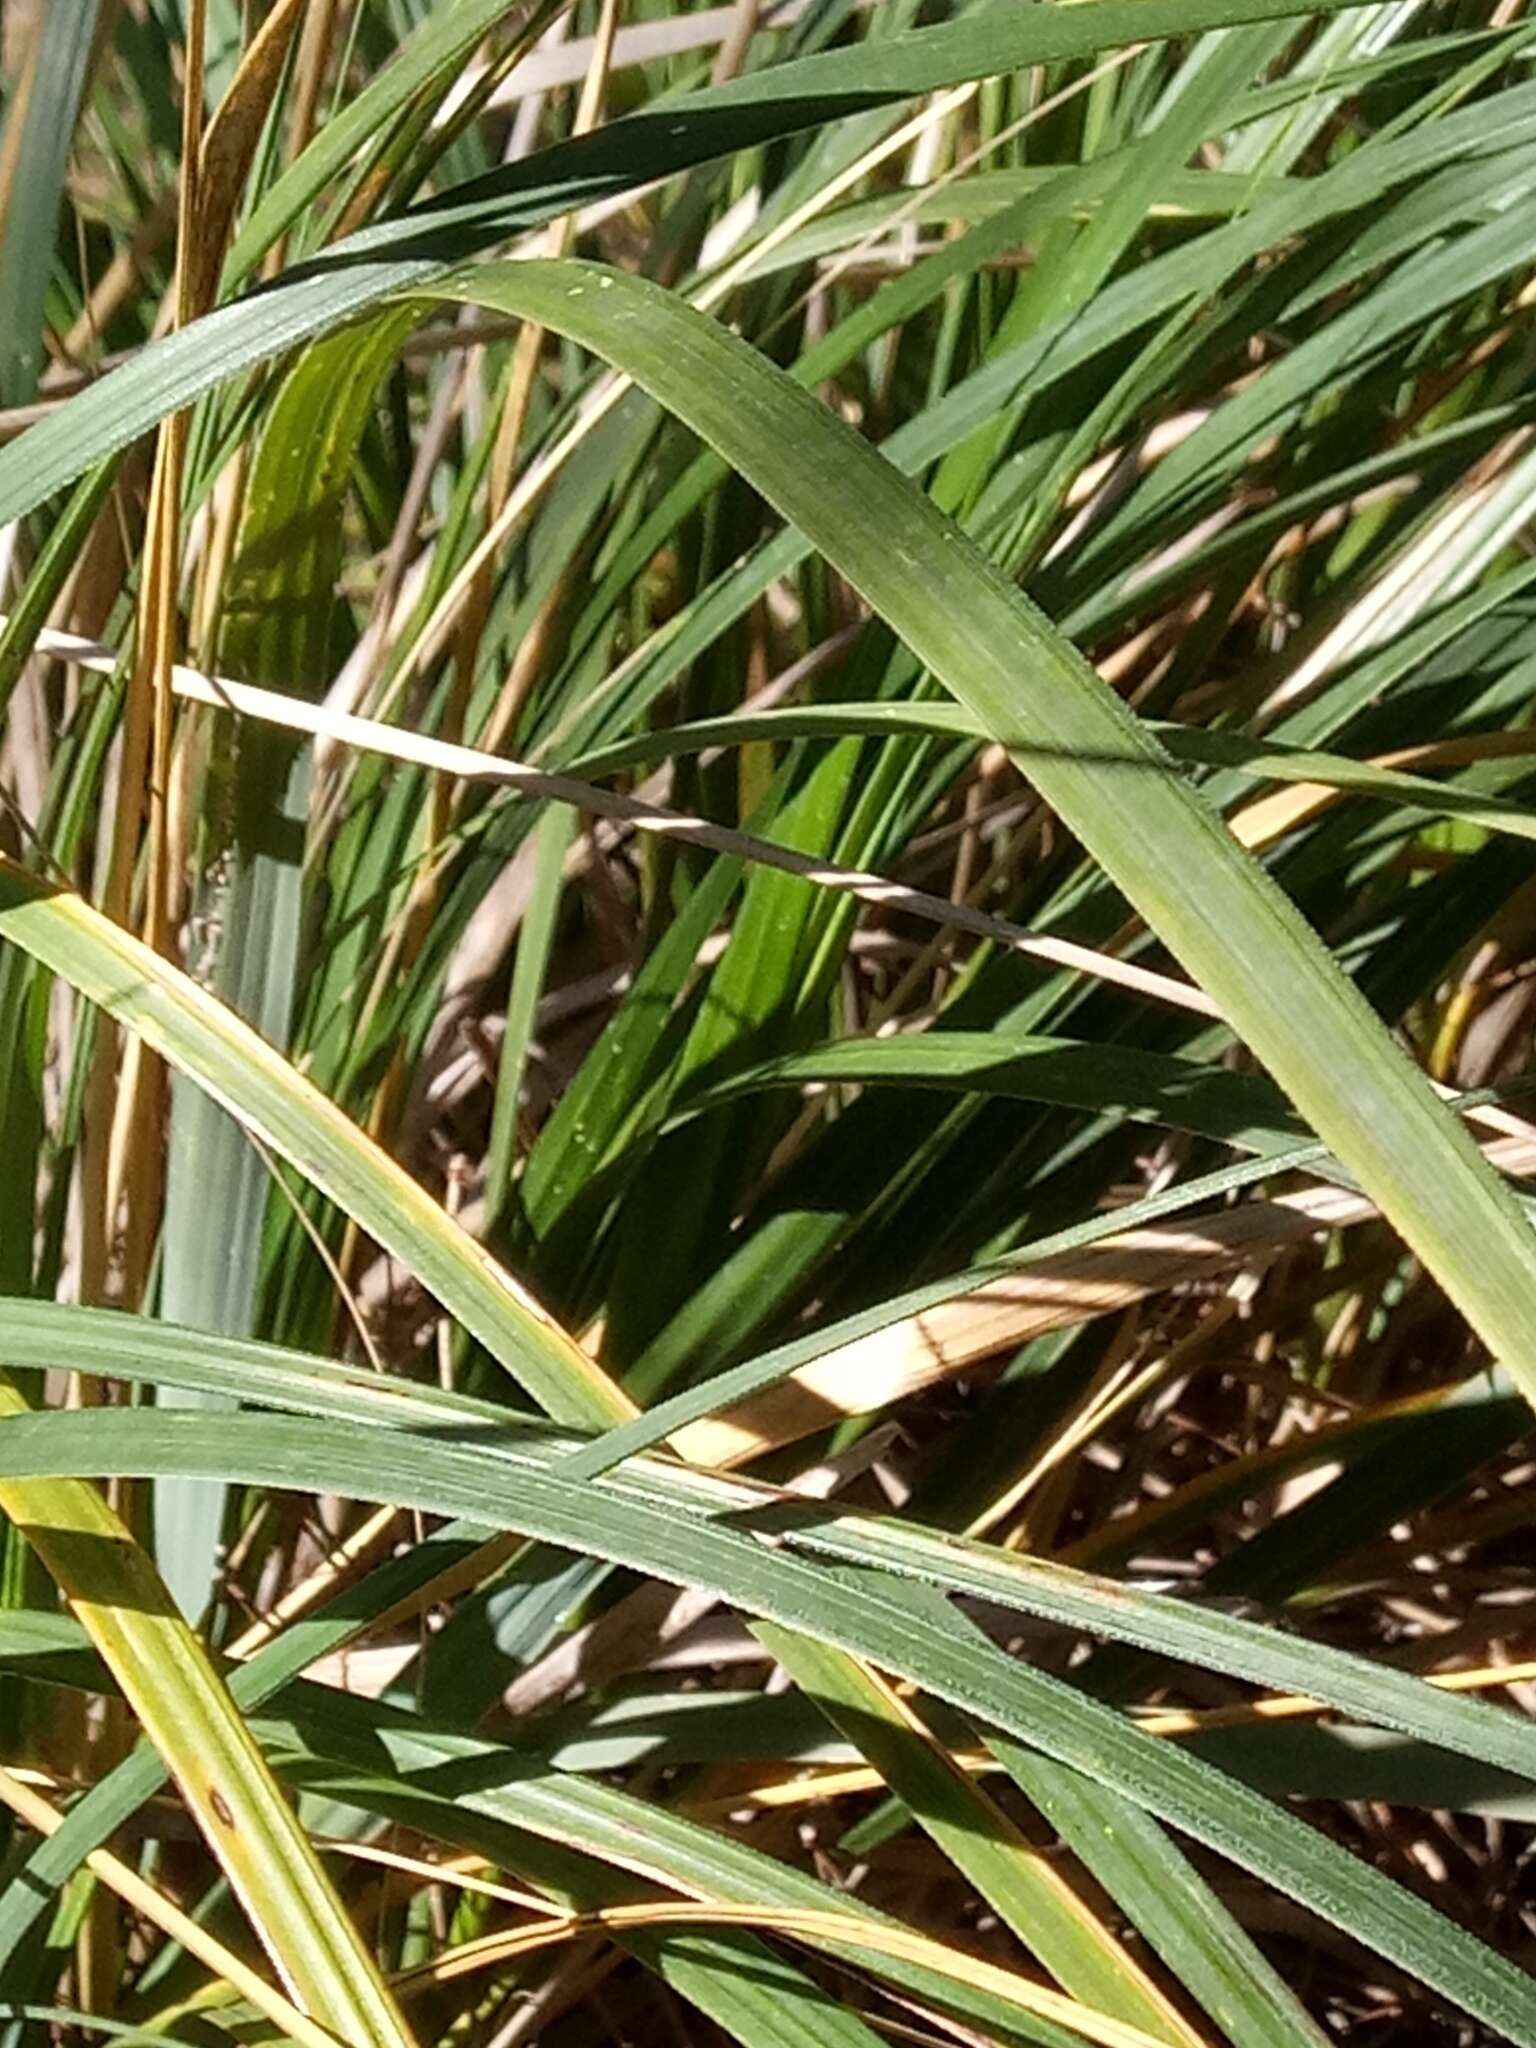 Image of Mauritanian grass